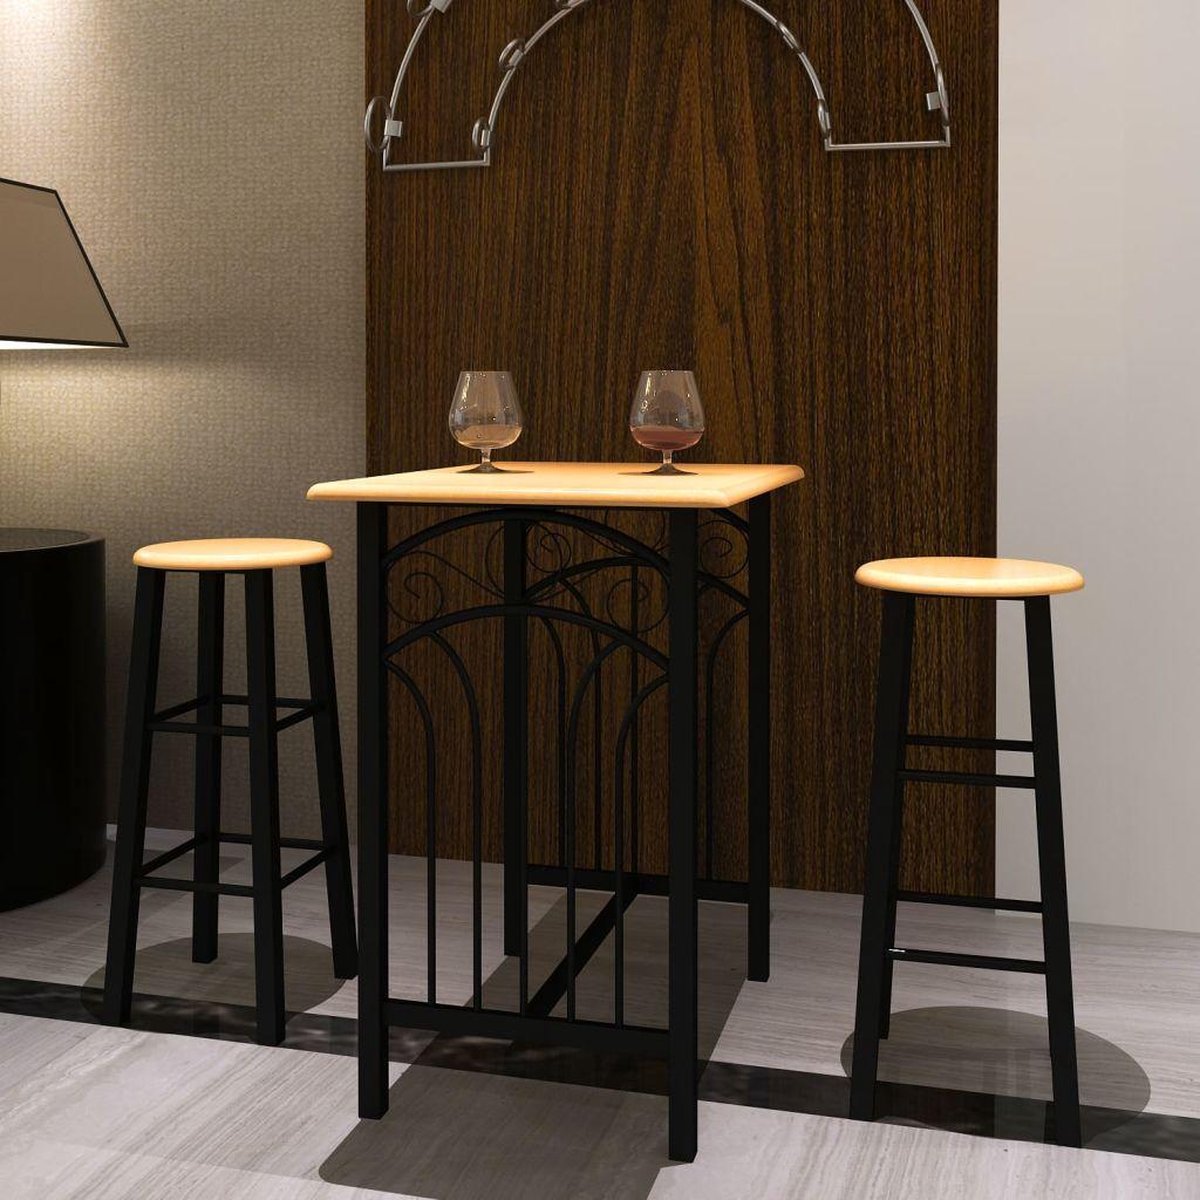 Verwonderend bol.com | vidaXL - Set tafel en stoelen Bar met barkrukken (2 stuks) YS-98